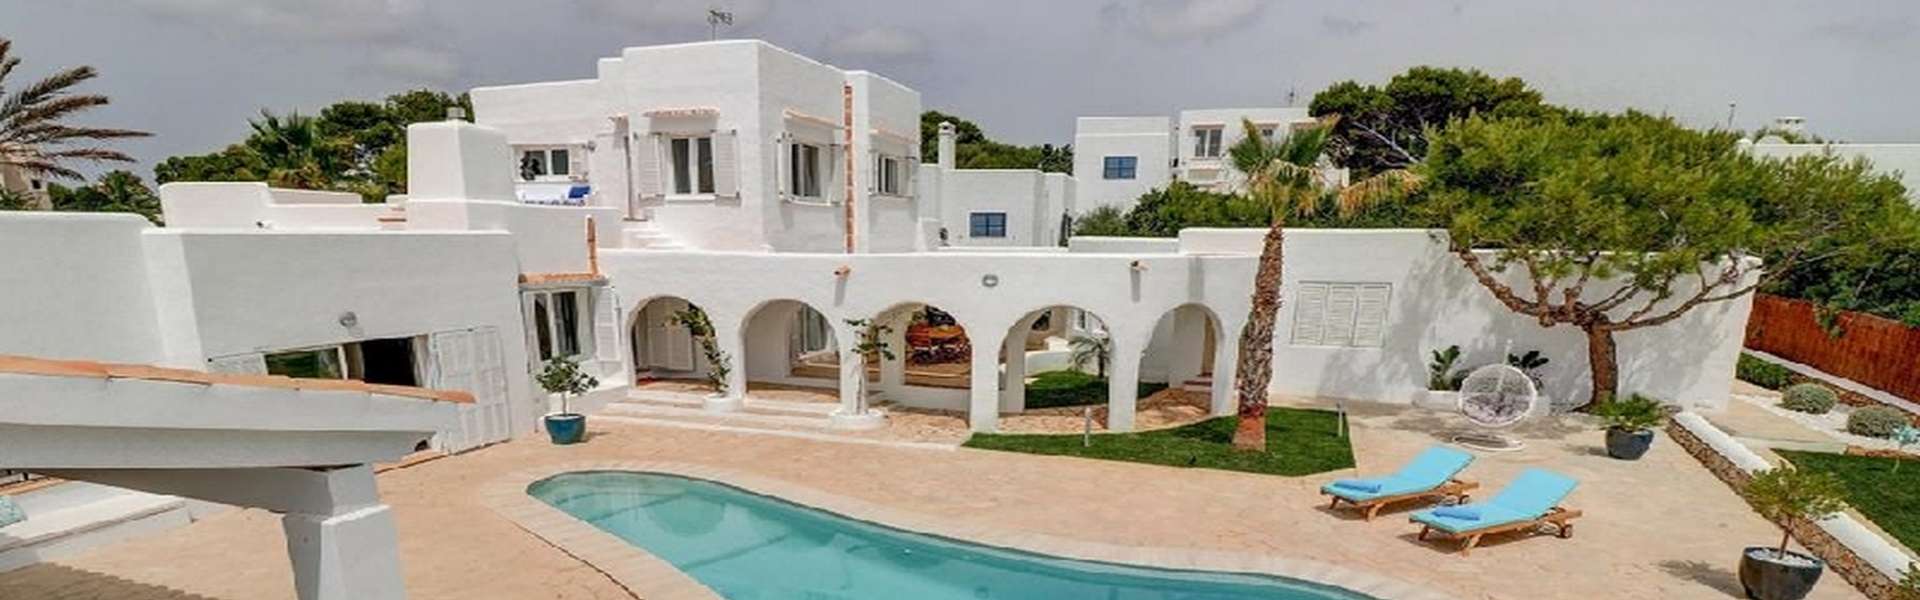 Attraktive Villa im Ibiza-Stil mit Meerblick in Cala d’Or